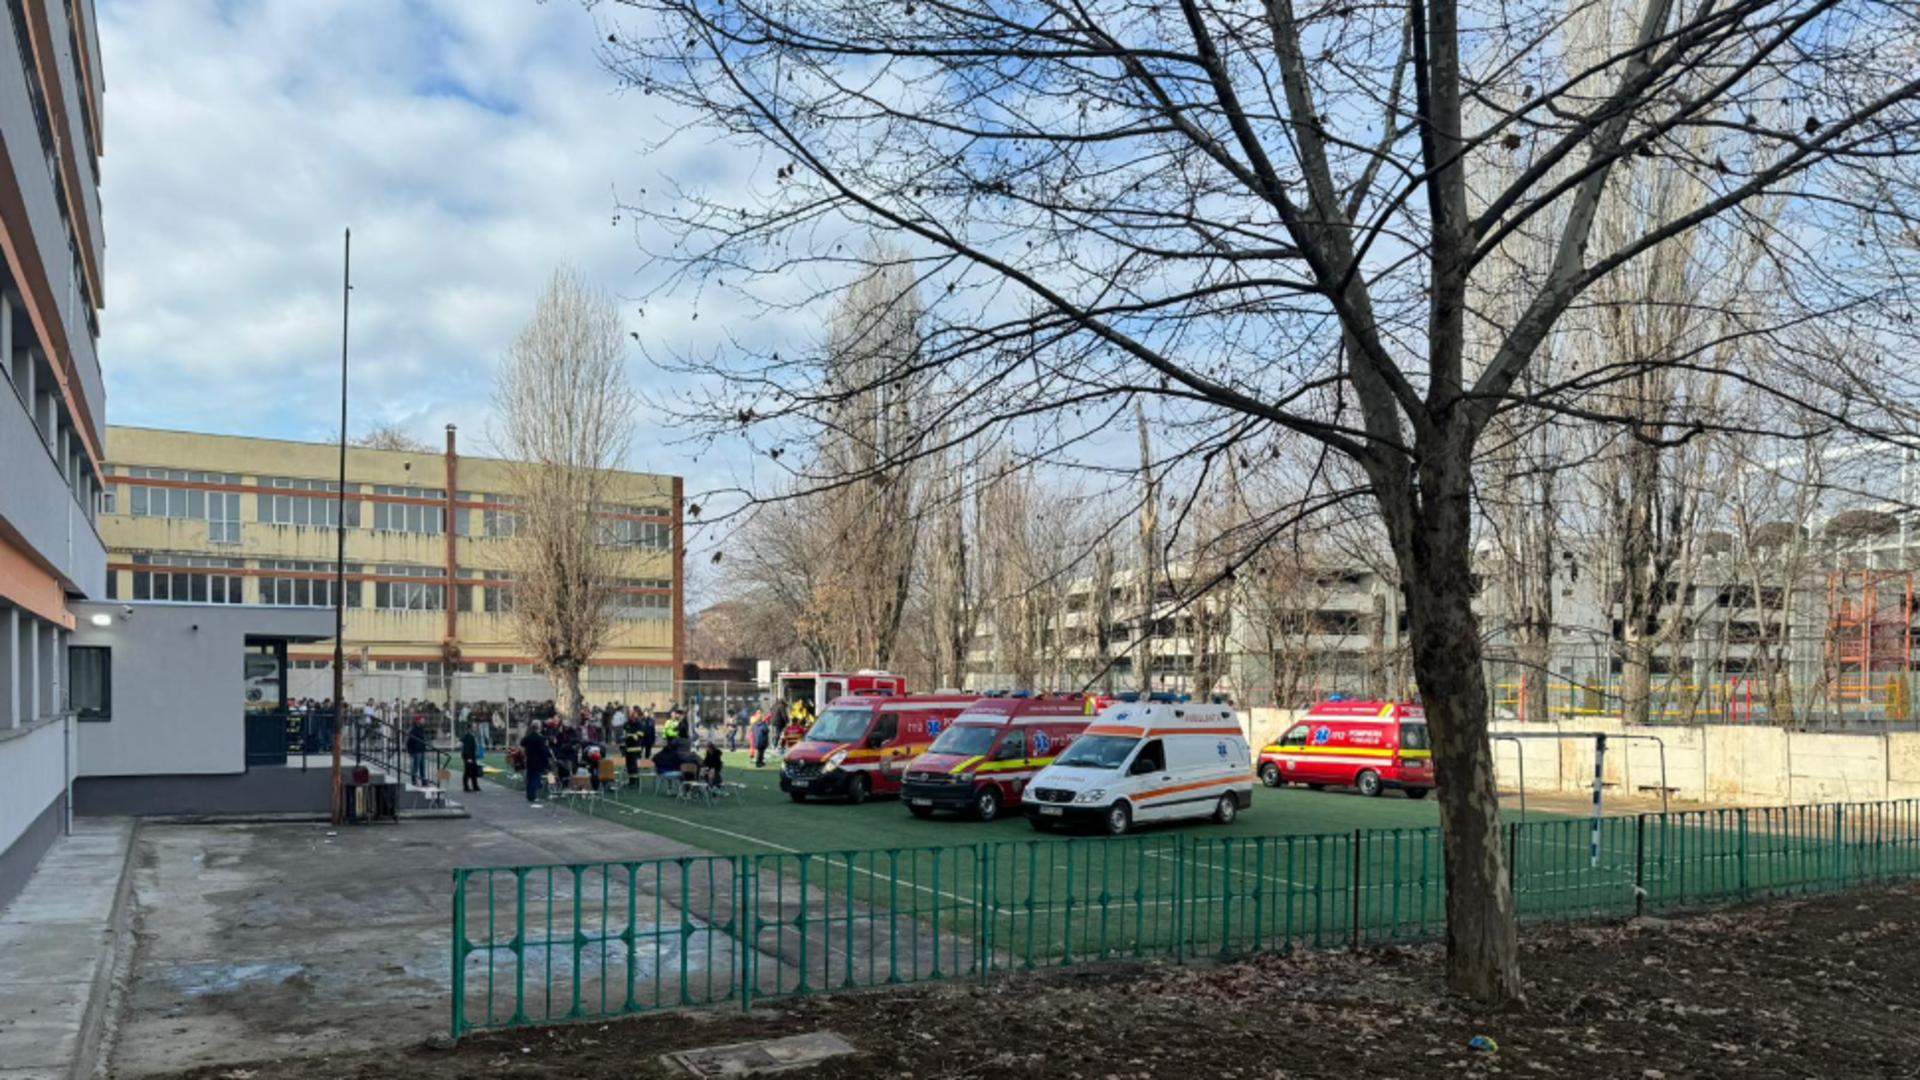 Două anchete, în desfășurare, în paralel, după incidentul de la Dimitrie Leonida. Conducerea școlii a informat Inspectoratul Școlar și a sesizat Poliția